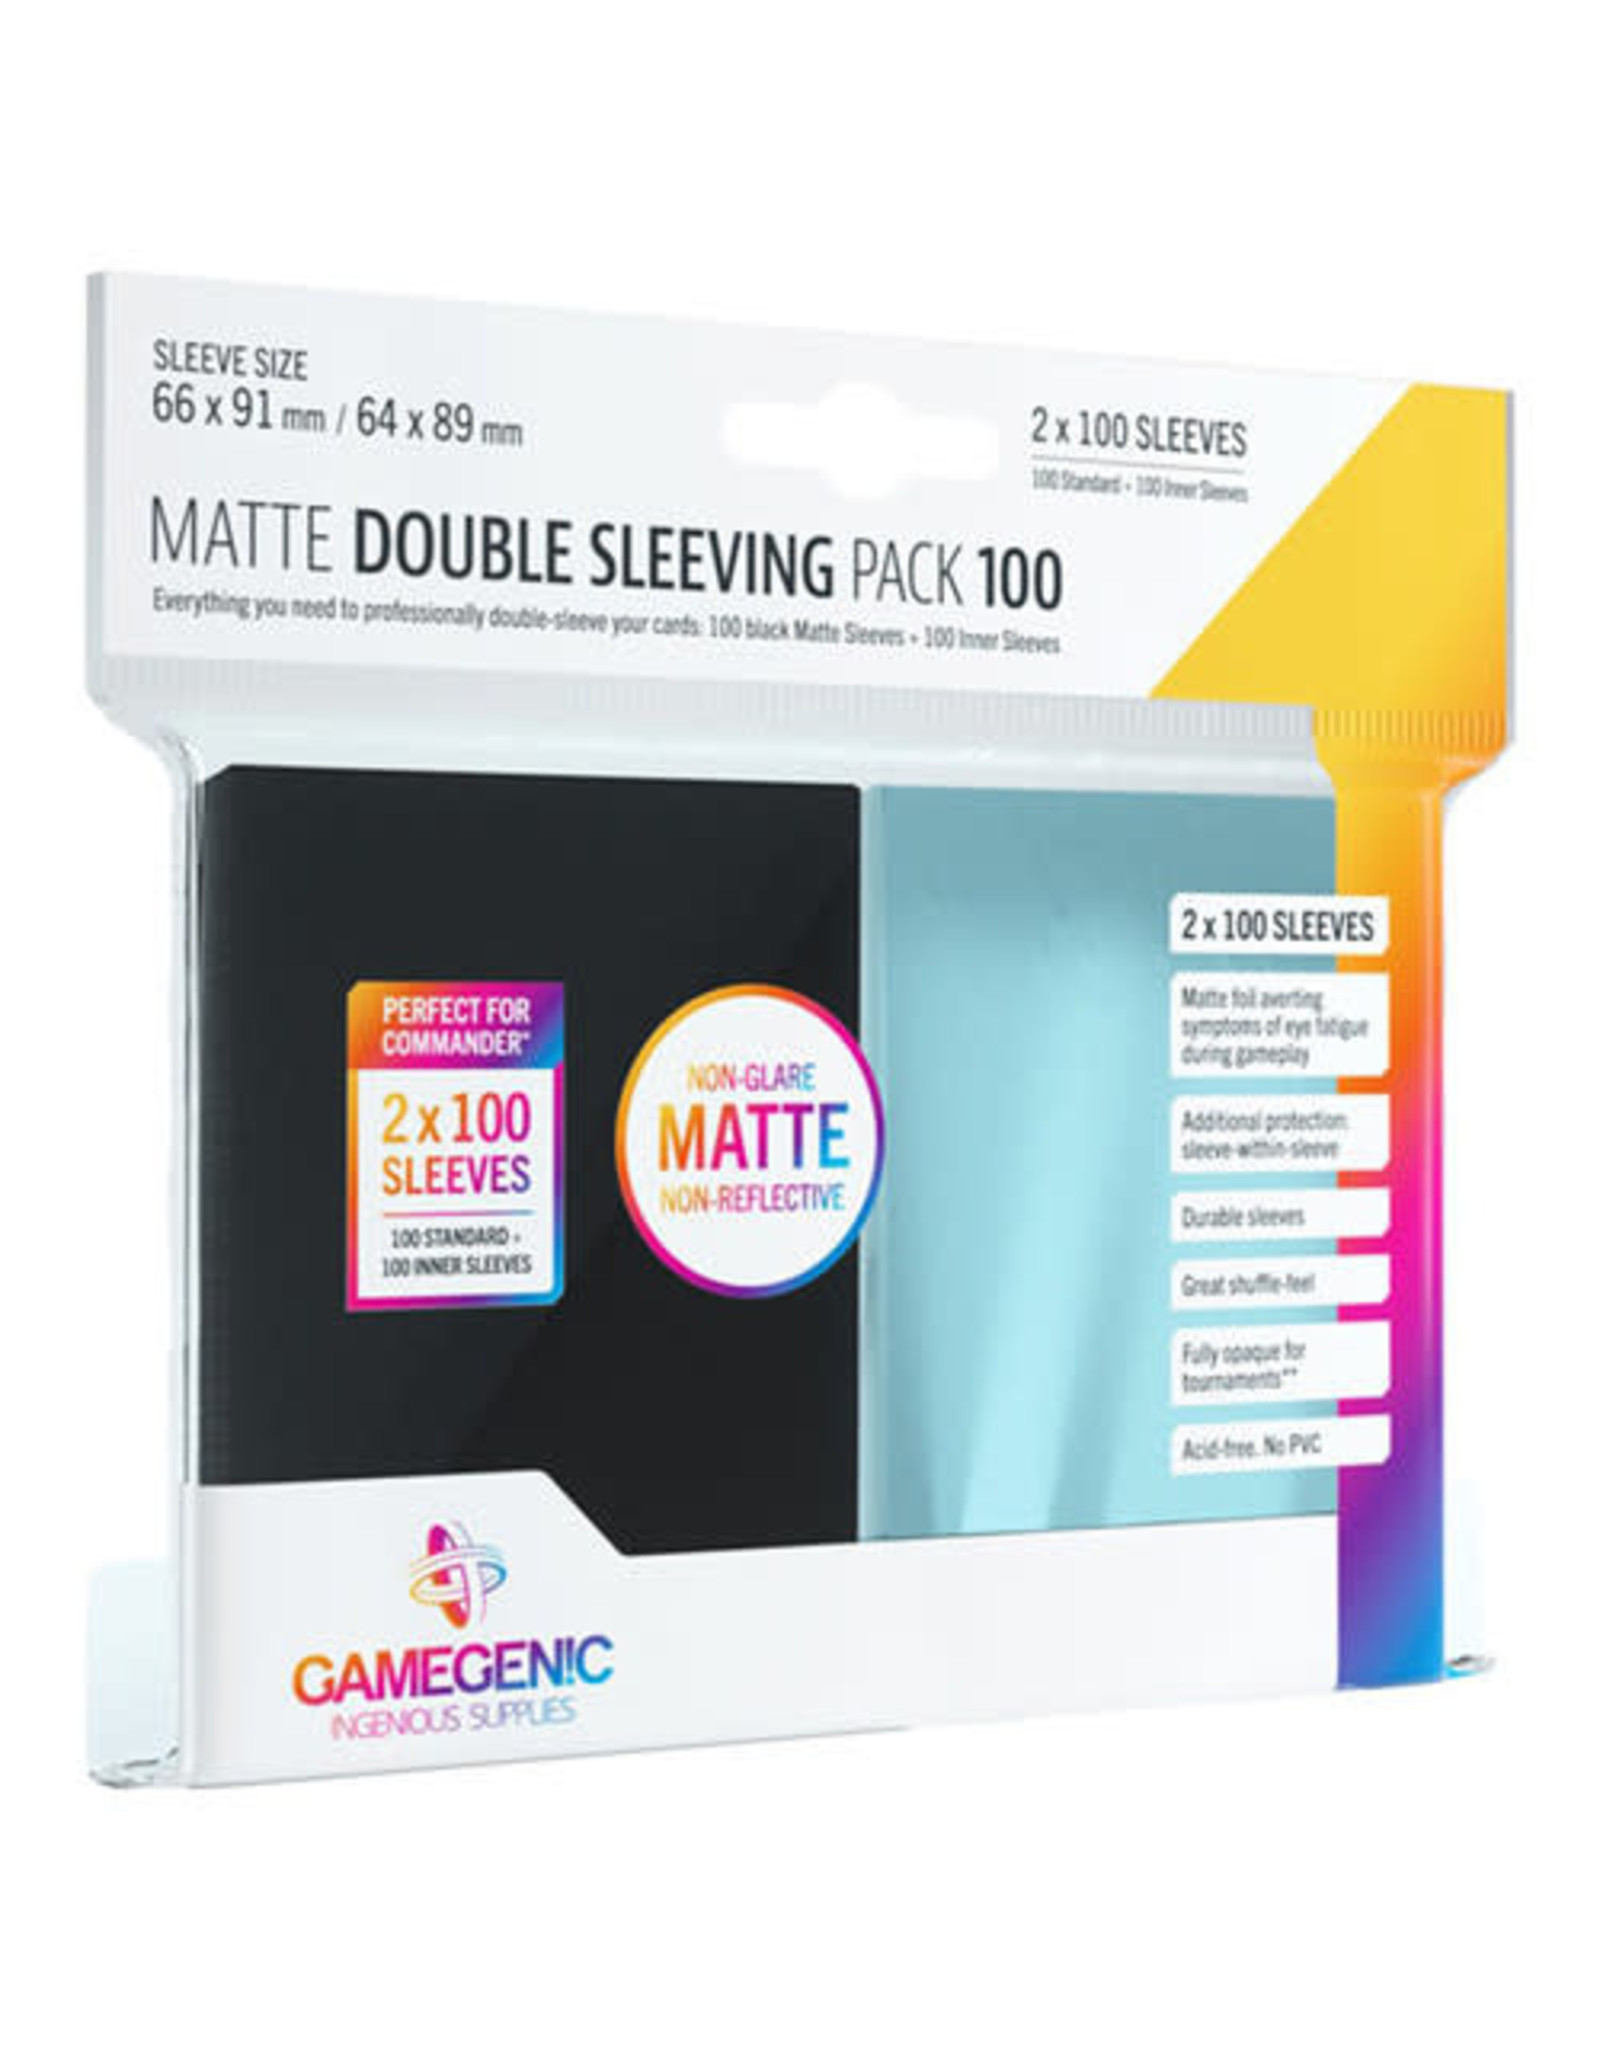 GAMEGEN!C G10110 Matte Double Sleeving Pack 100